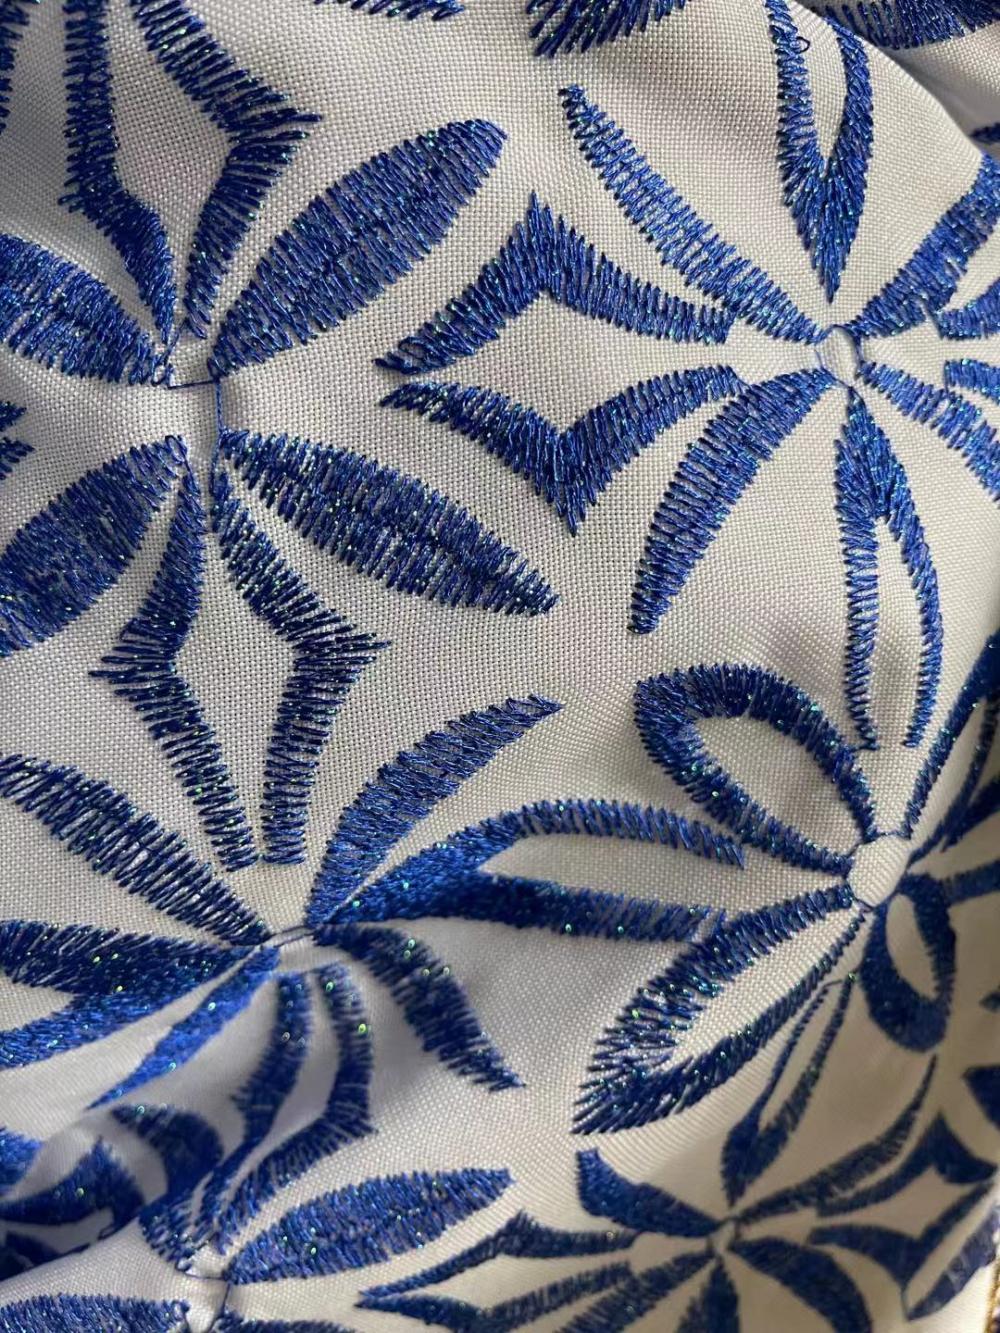 Metallic Satin Embroidery Fabric